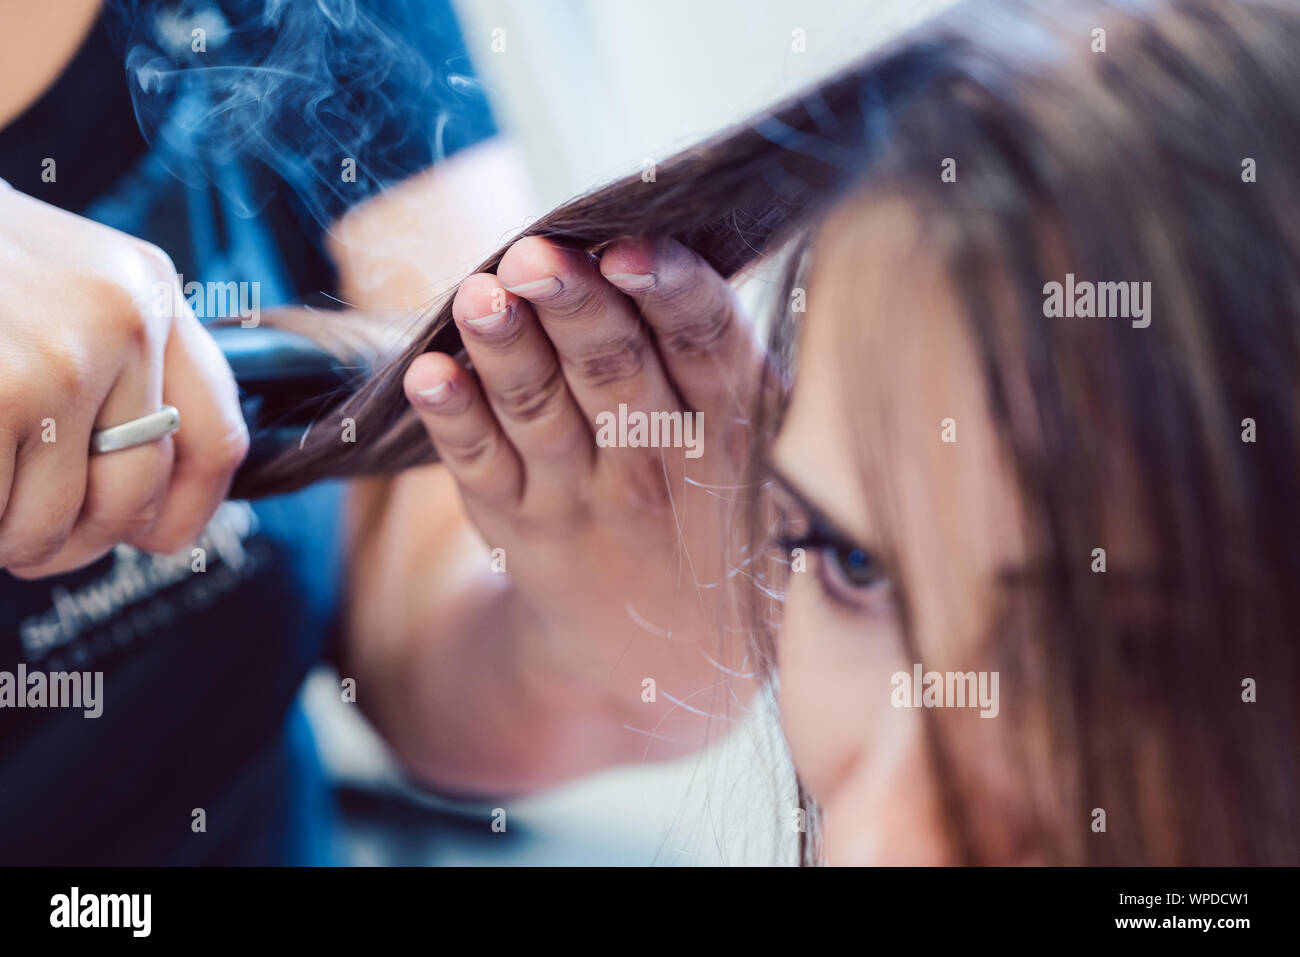 Friseur mit Bügeleisen auf das Haar der Frau Kunde Stockfoto